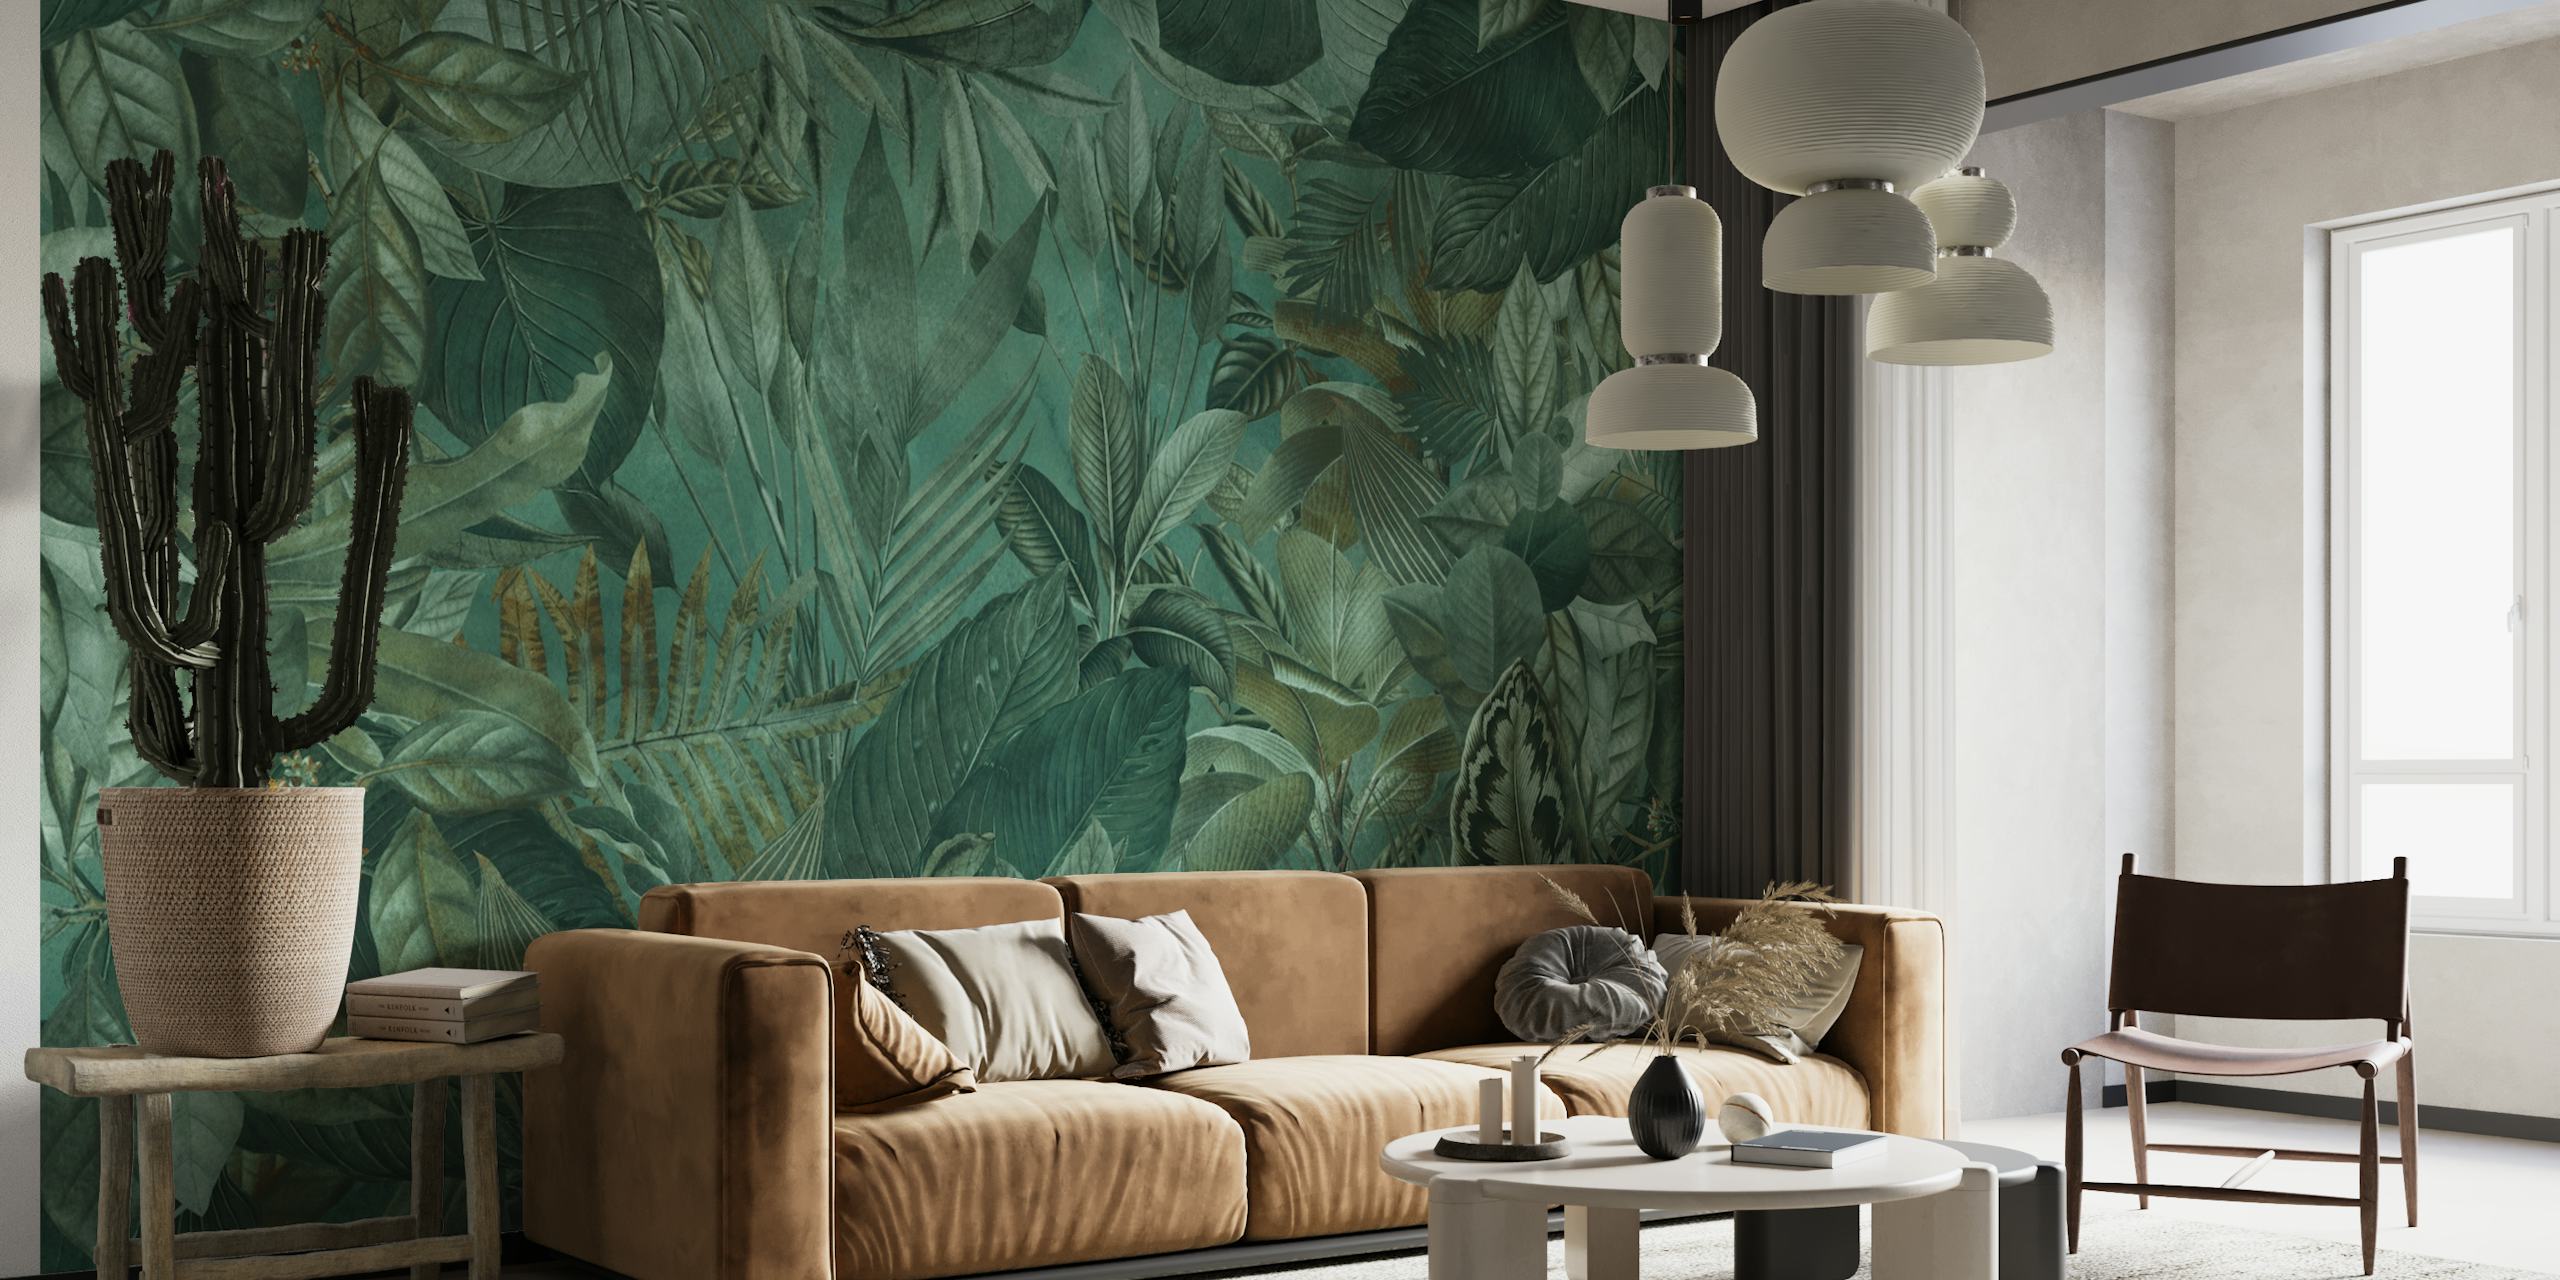 Smaragdinvihreä trooppinen viidakkoaiheinen seinämaalaus, jossa on tiheä lehdet ja kukkakuviot